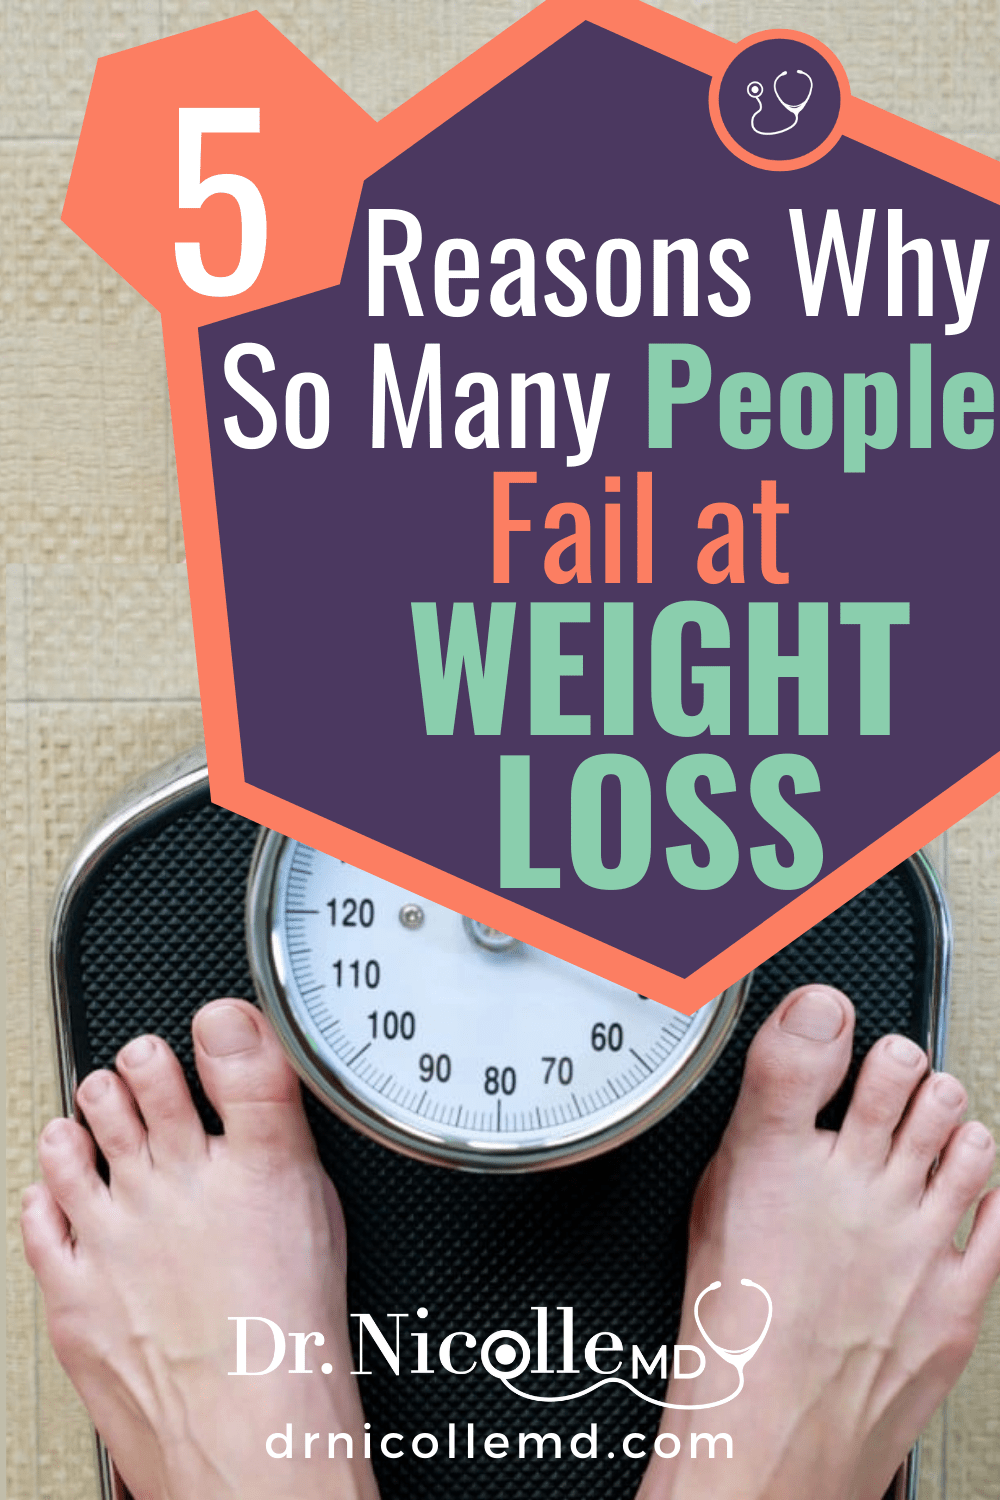 5 Reasons Why So Many People Fail at Weight Loss